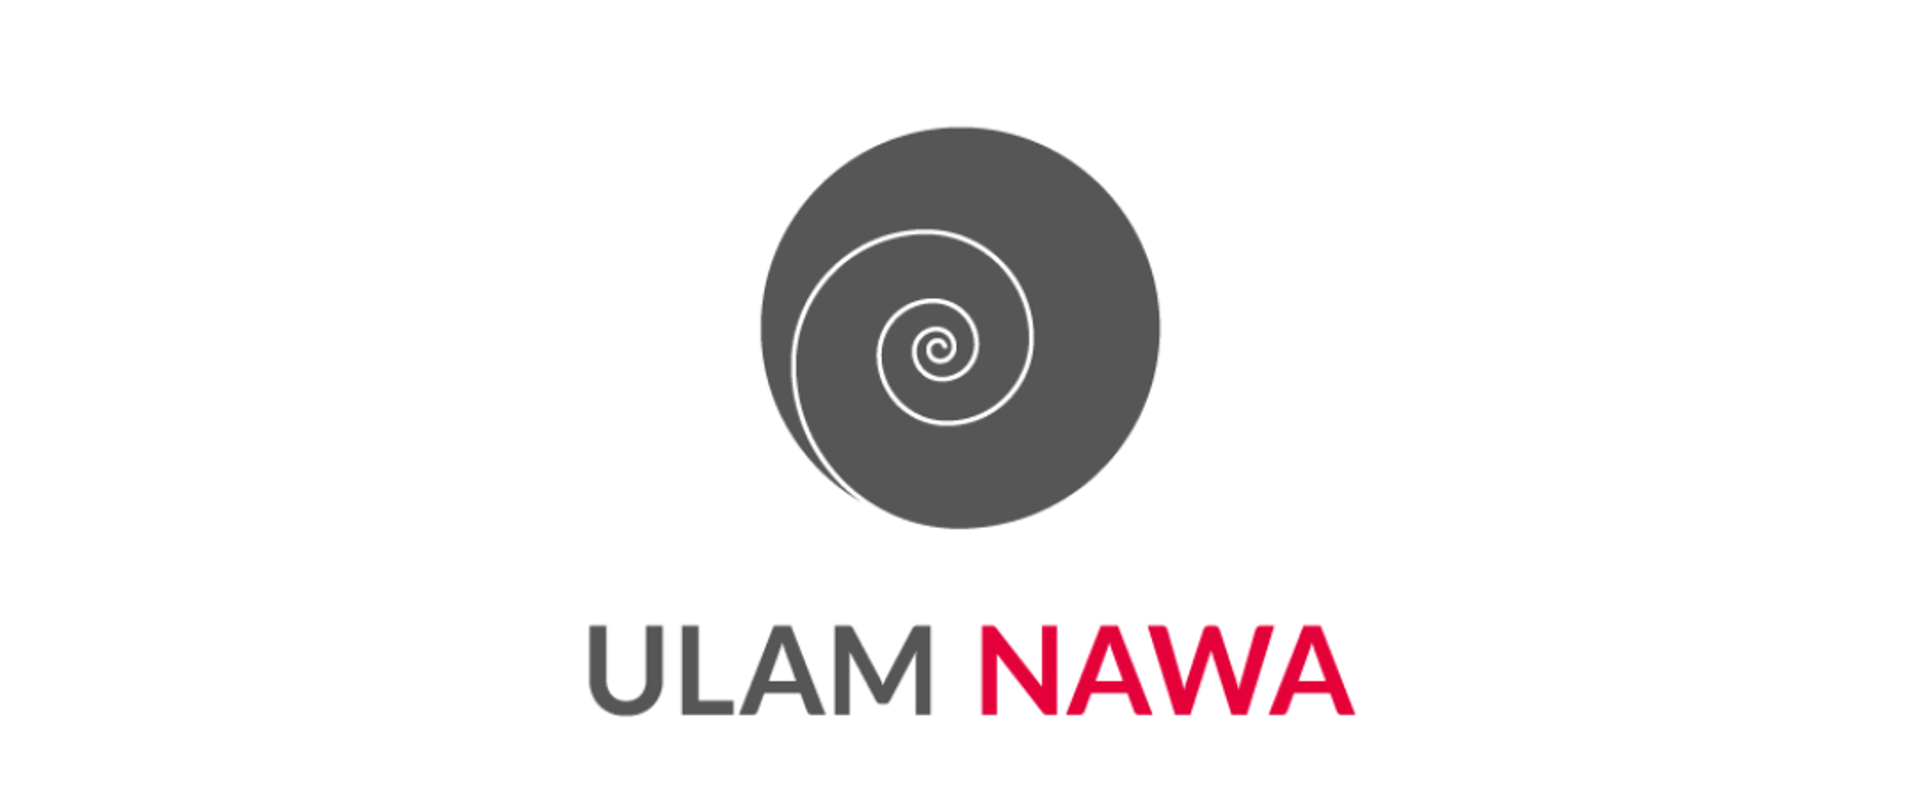 Naukowców zagranicznych uczelni oraz ośrodków badawczych, posiadających tytuł co najmniej doktora, zapraszamy do składania wniosków do kolejnej edycji programu Ulam NAWA.